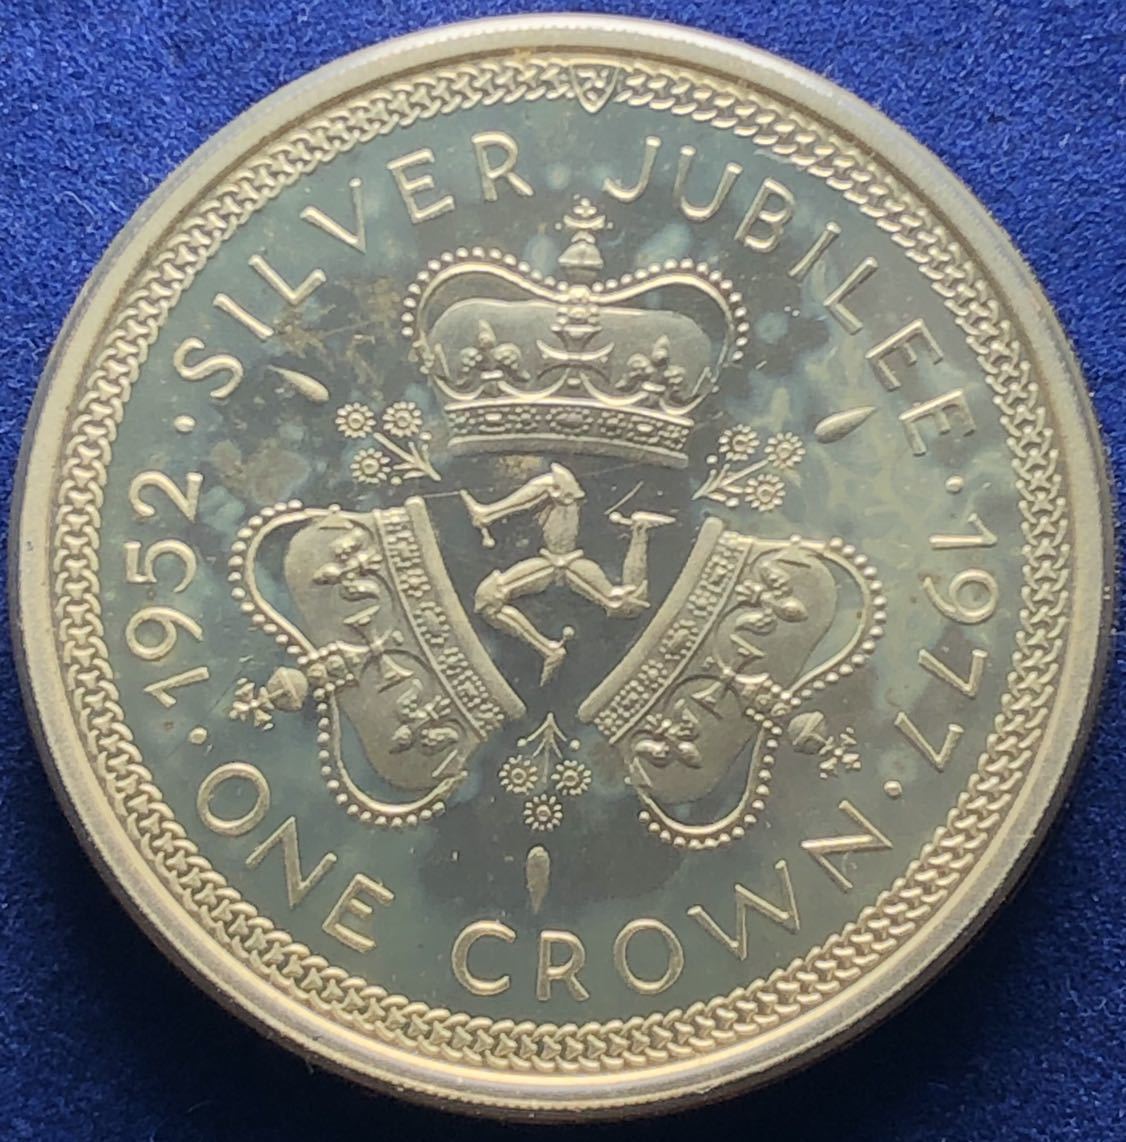  原文:イギリス領マン島銀貨 1952年 プルーフ 28.5g エリザベス2世 jubilee head